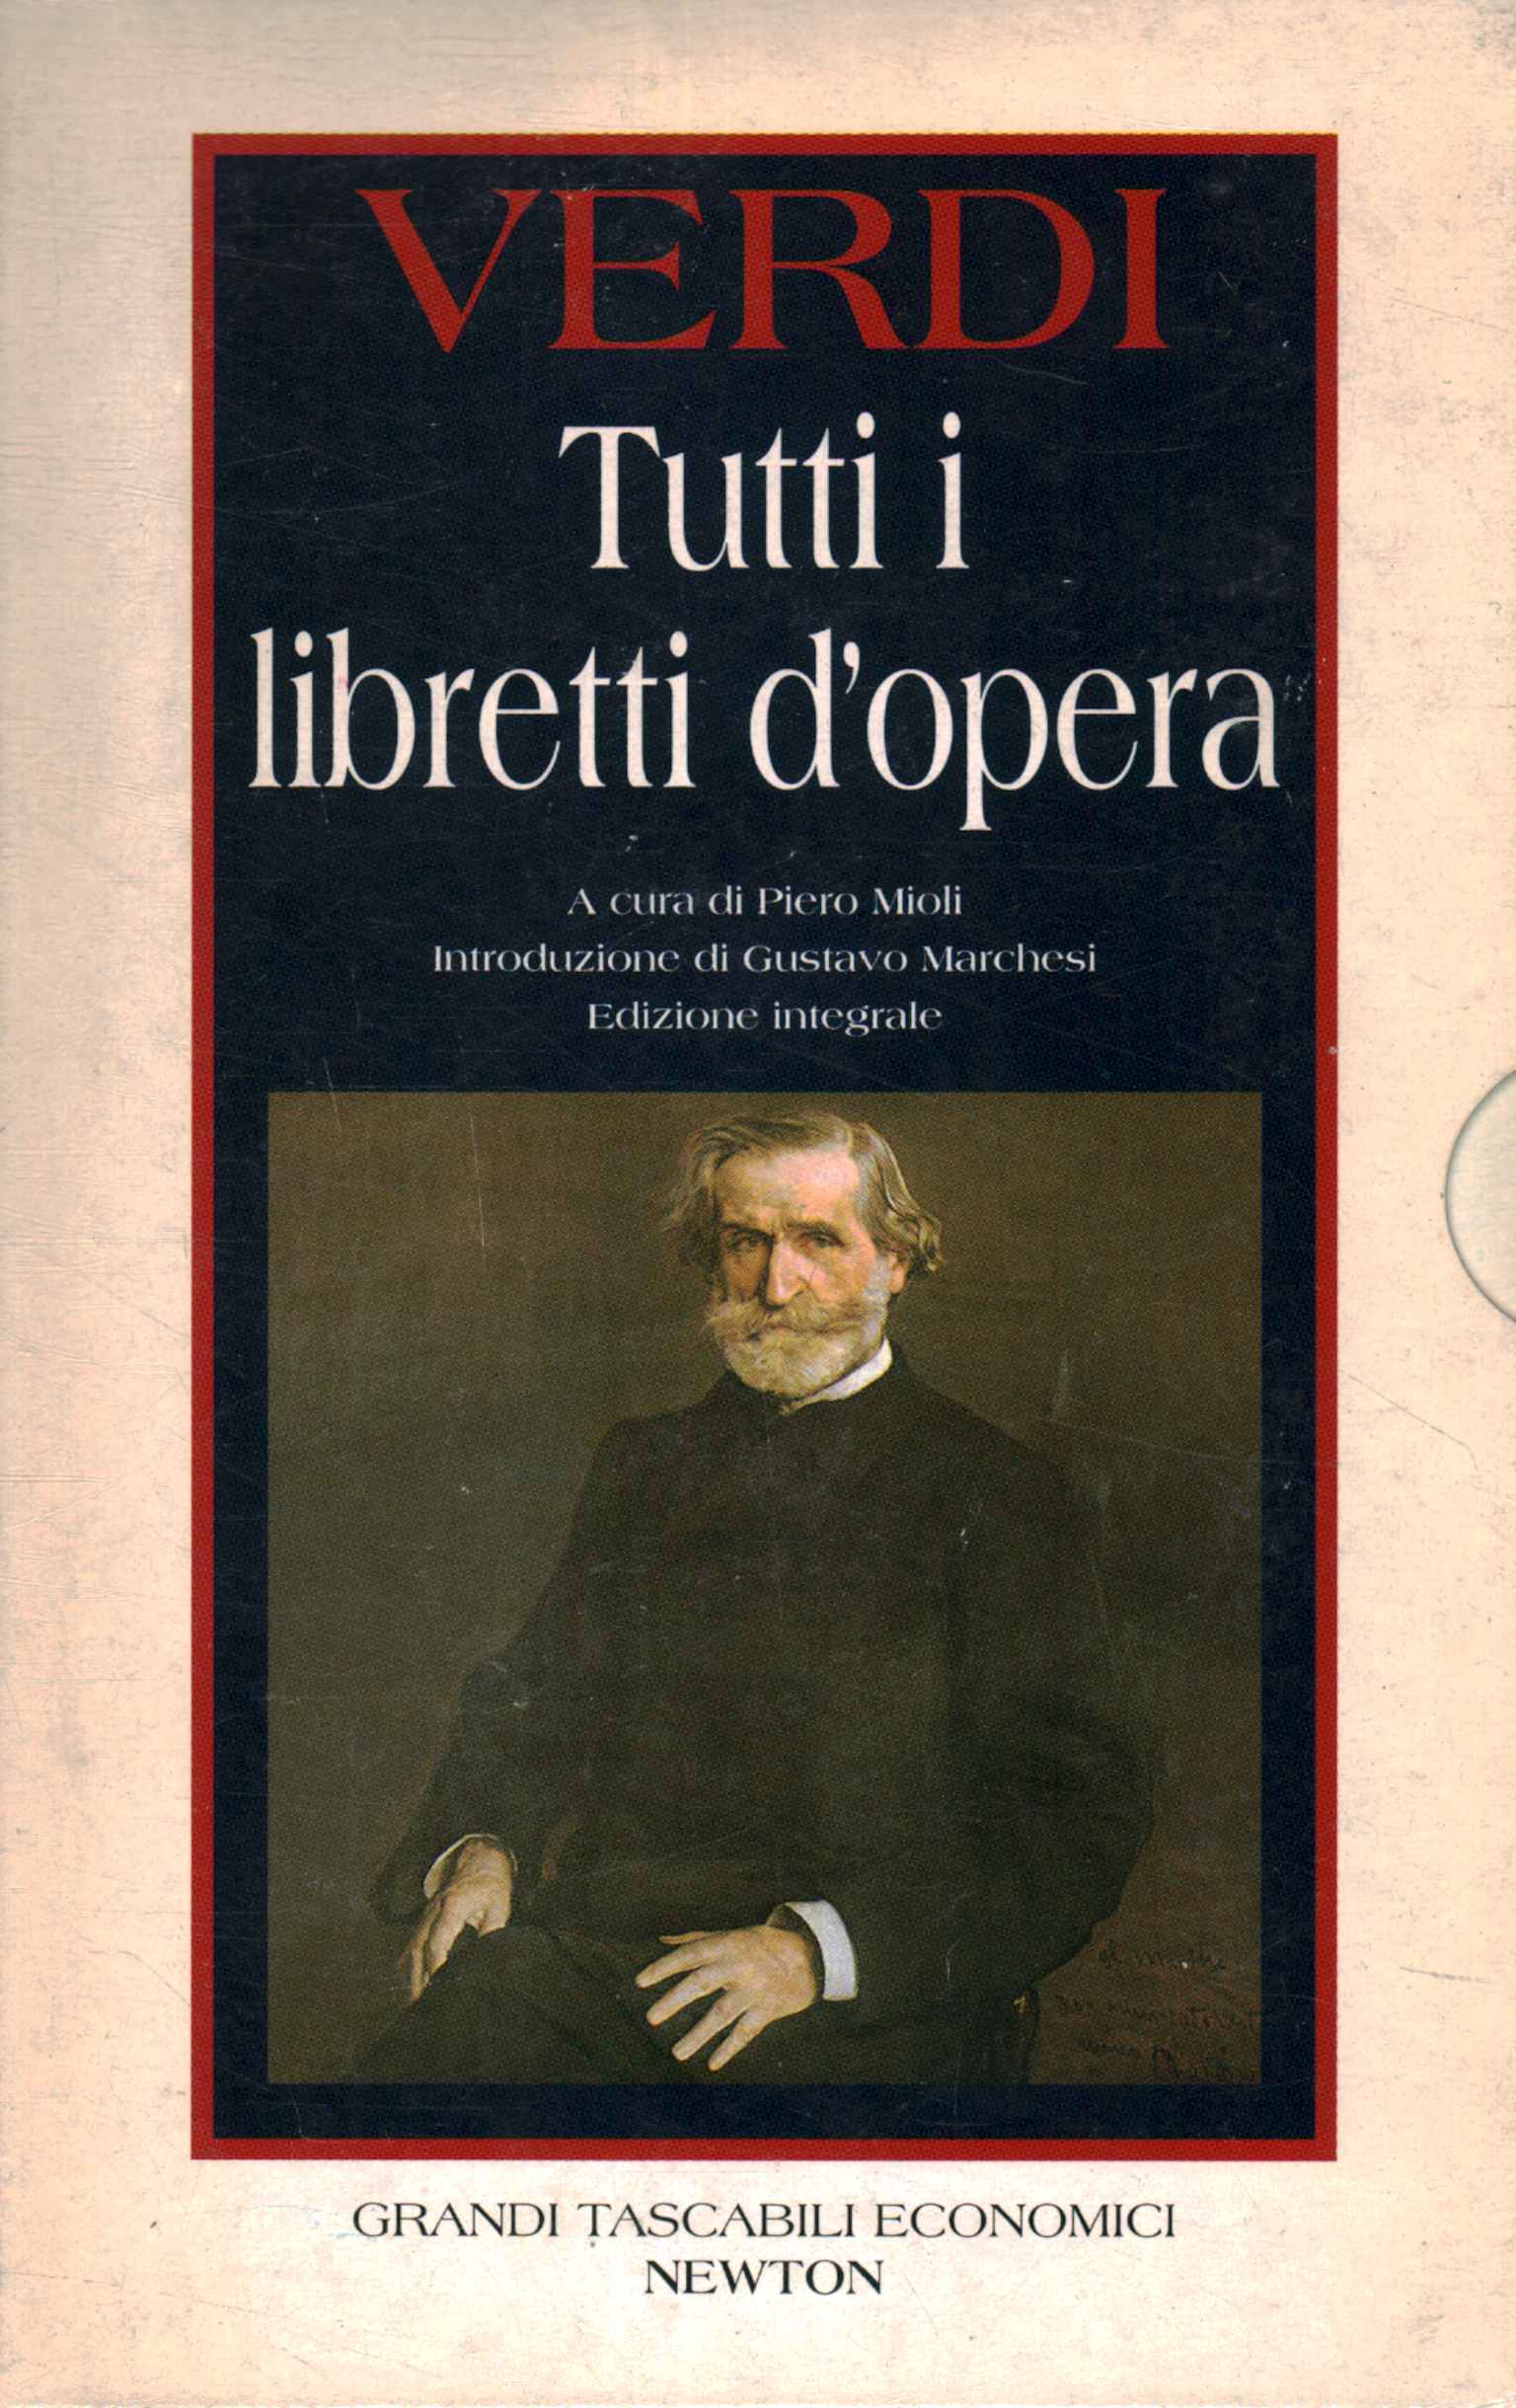 Verdi All opera librettos%,Verdi All opera librettos%